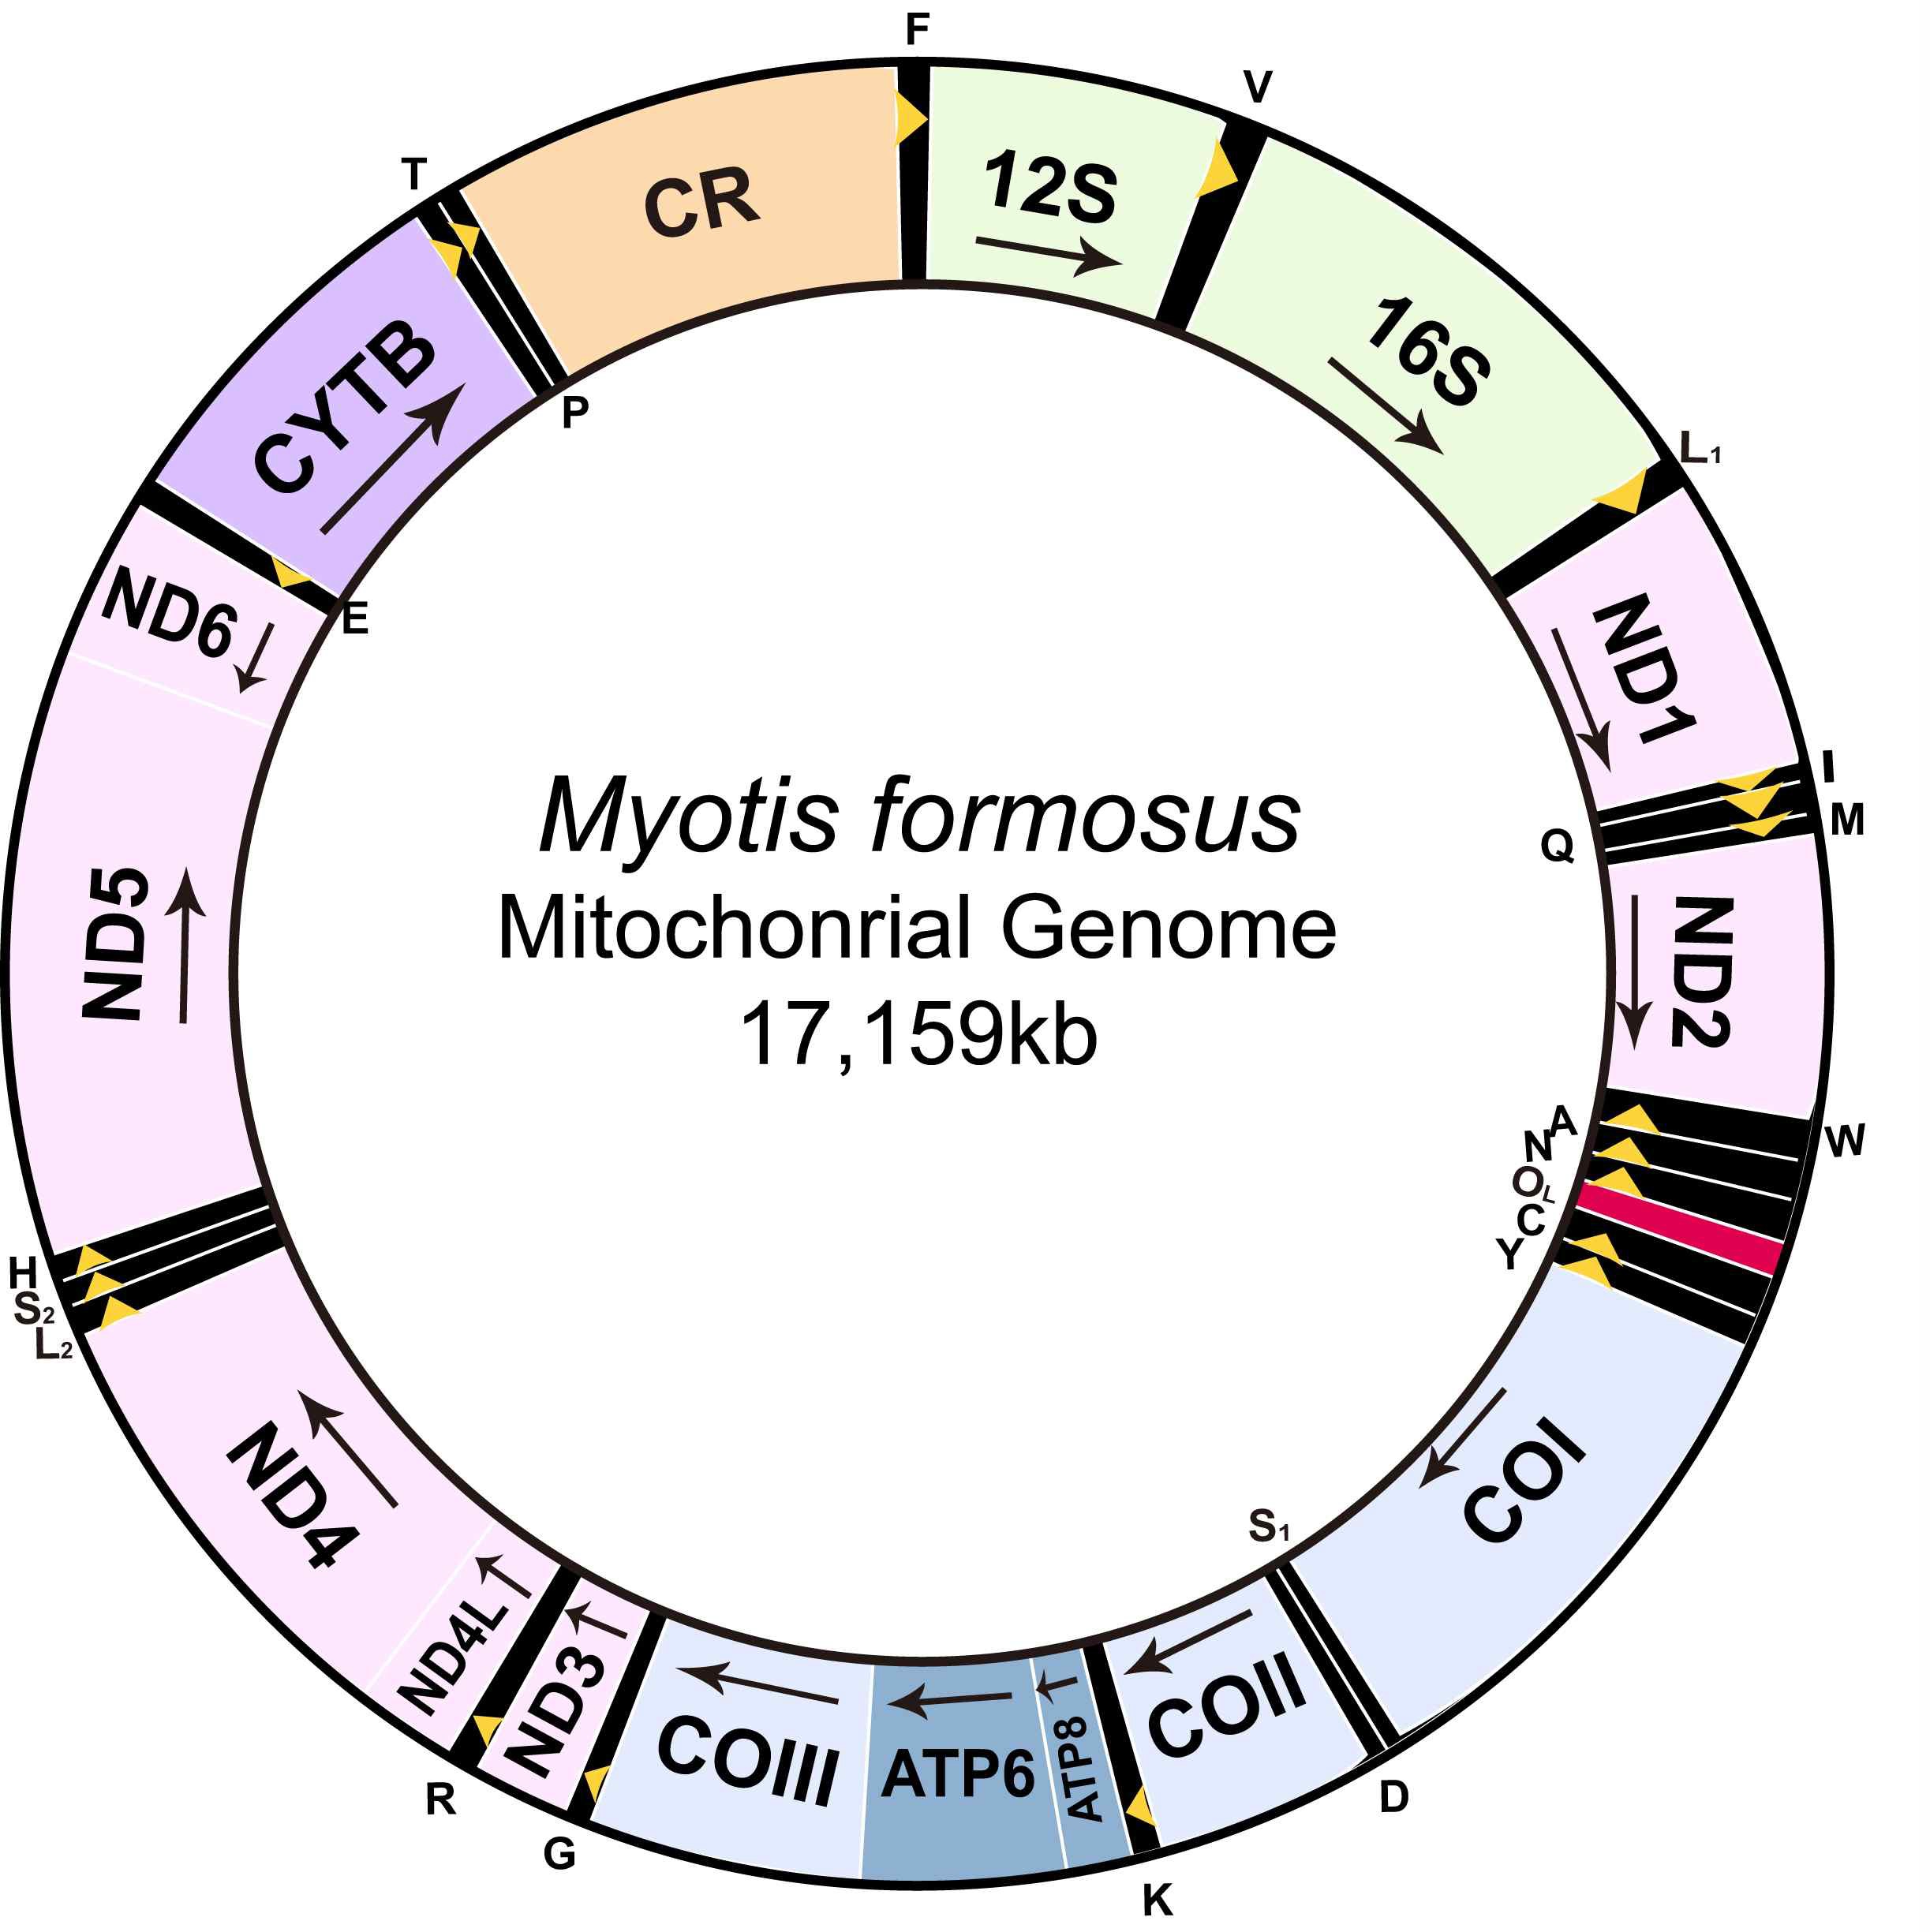 그림 Ⅱ-1-1-10. 붉은박쥐의 전체 미토콘드리아 유전체의 유전자 배열